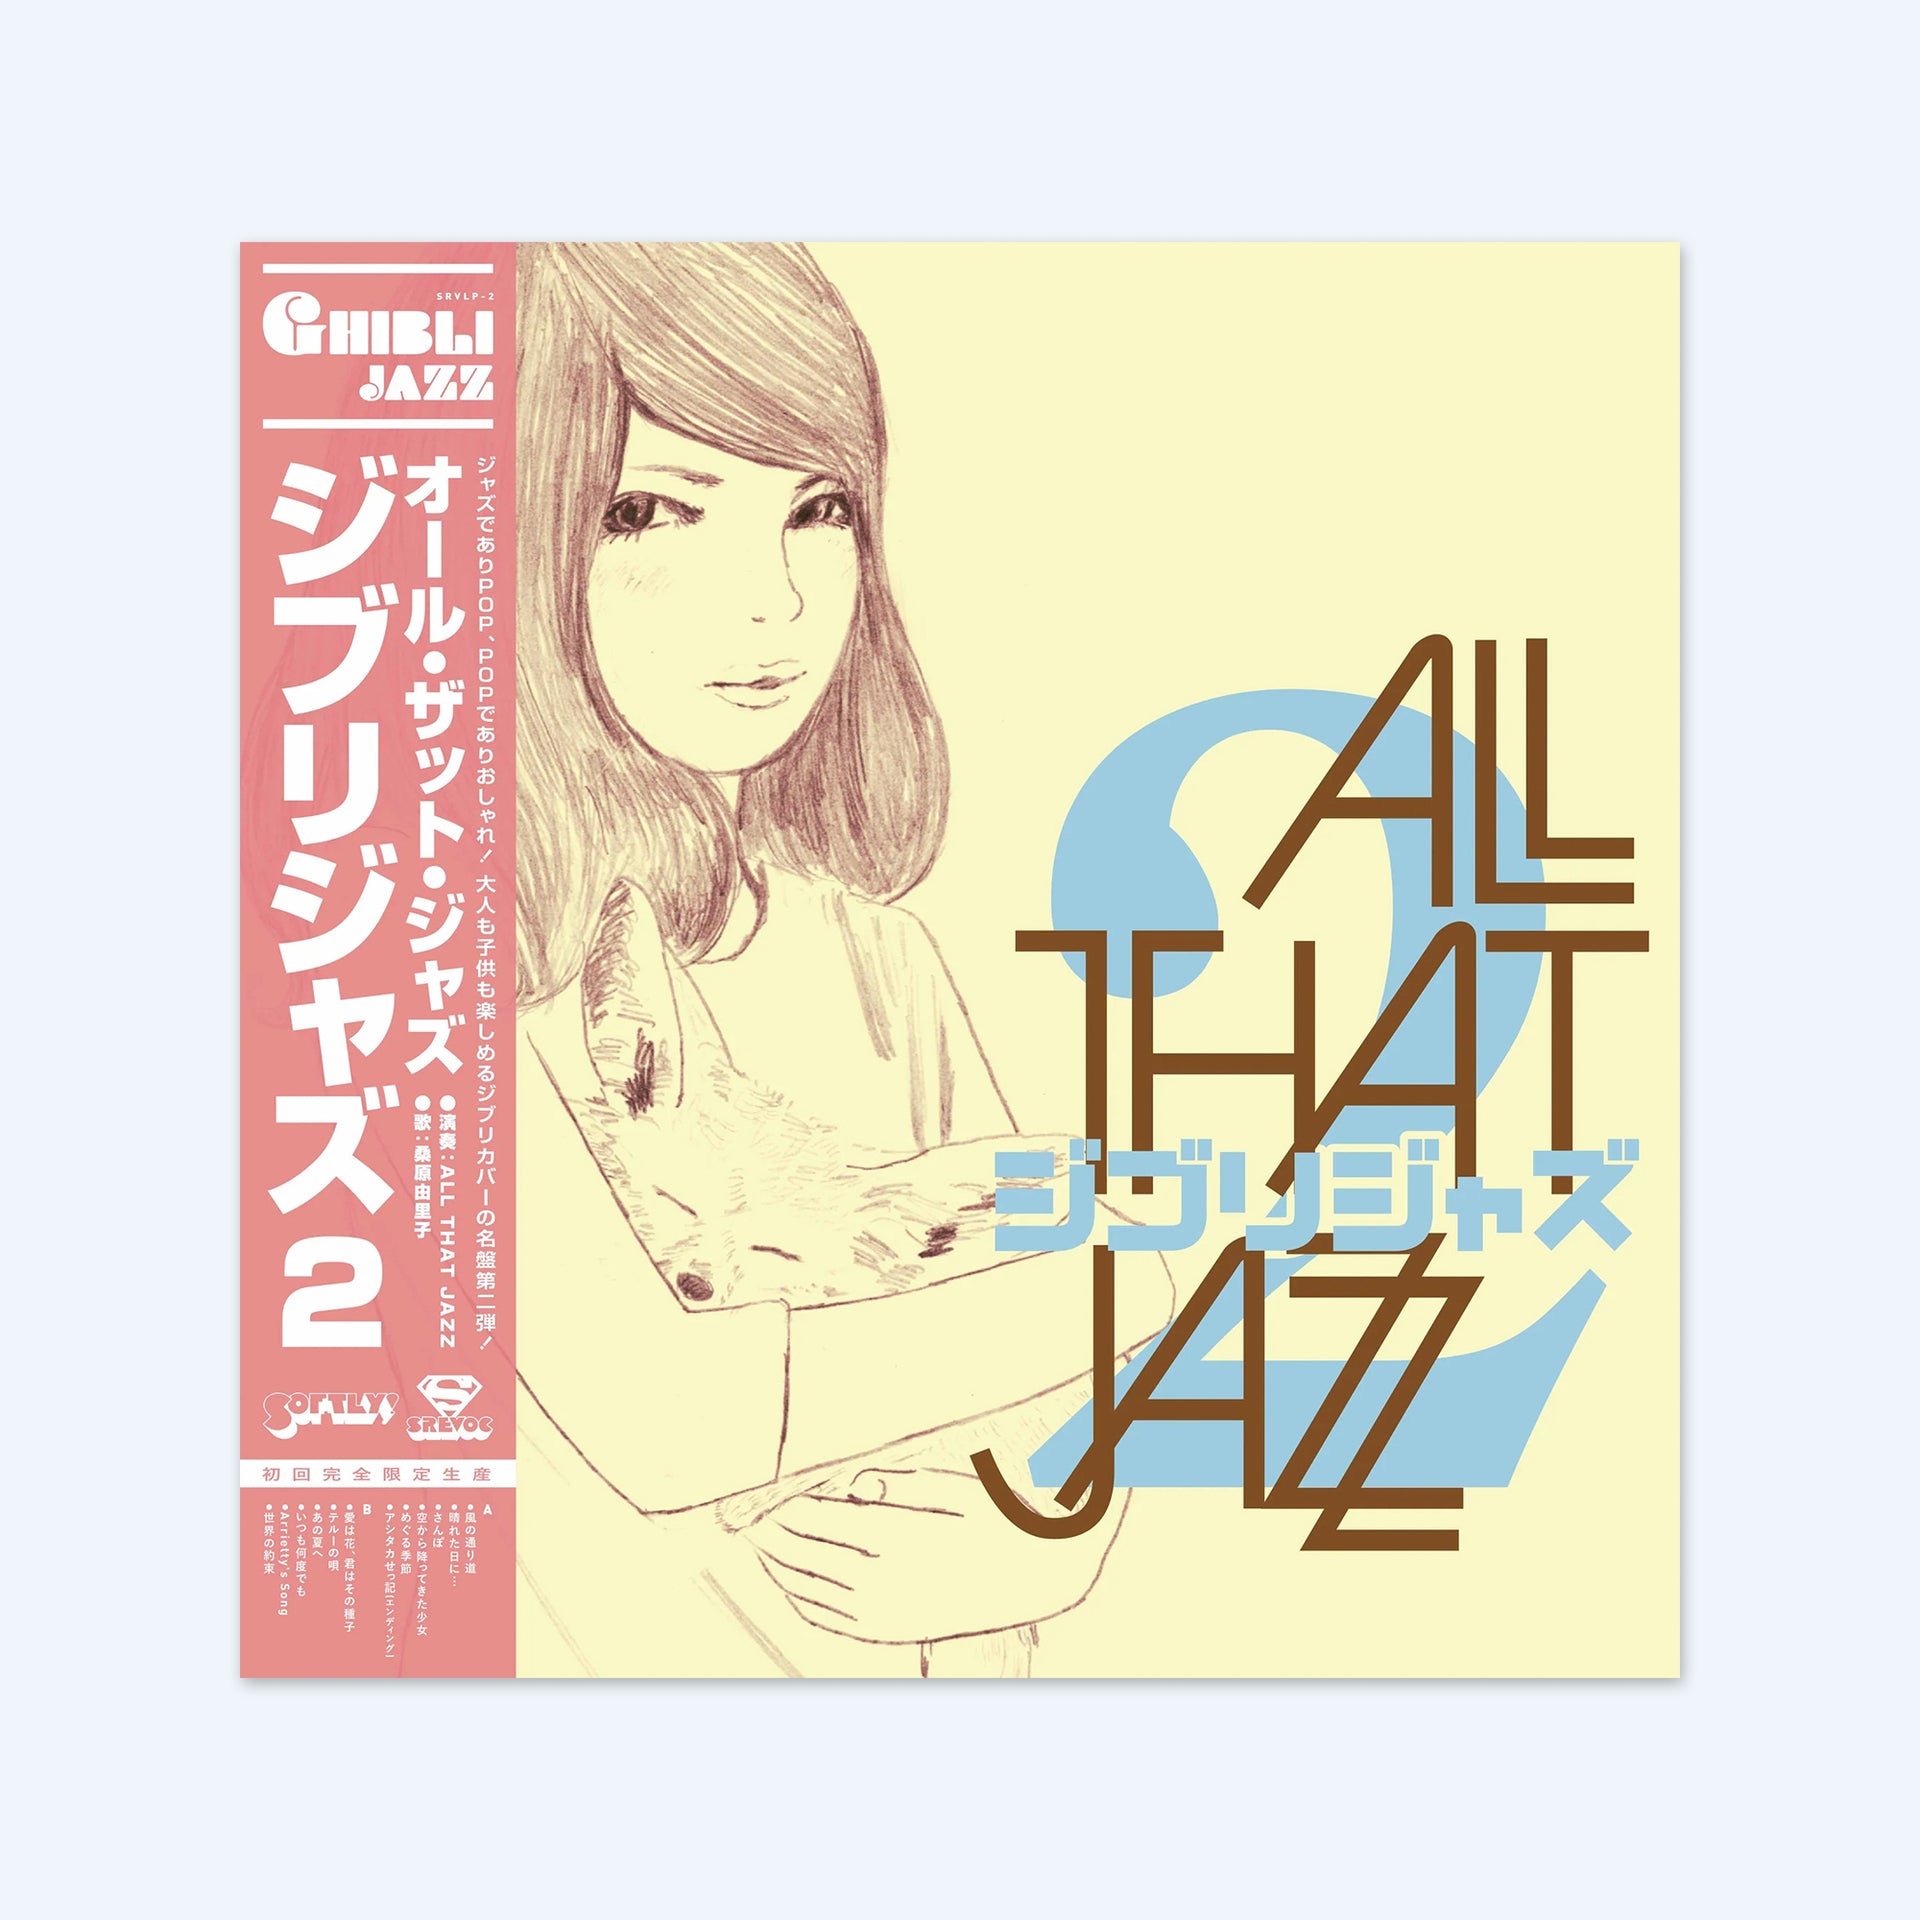 Ghibli Jazz 2 by All That Jazz